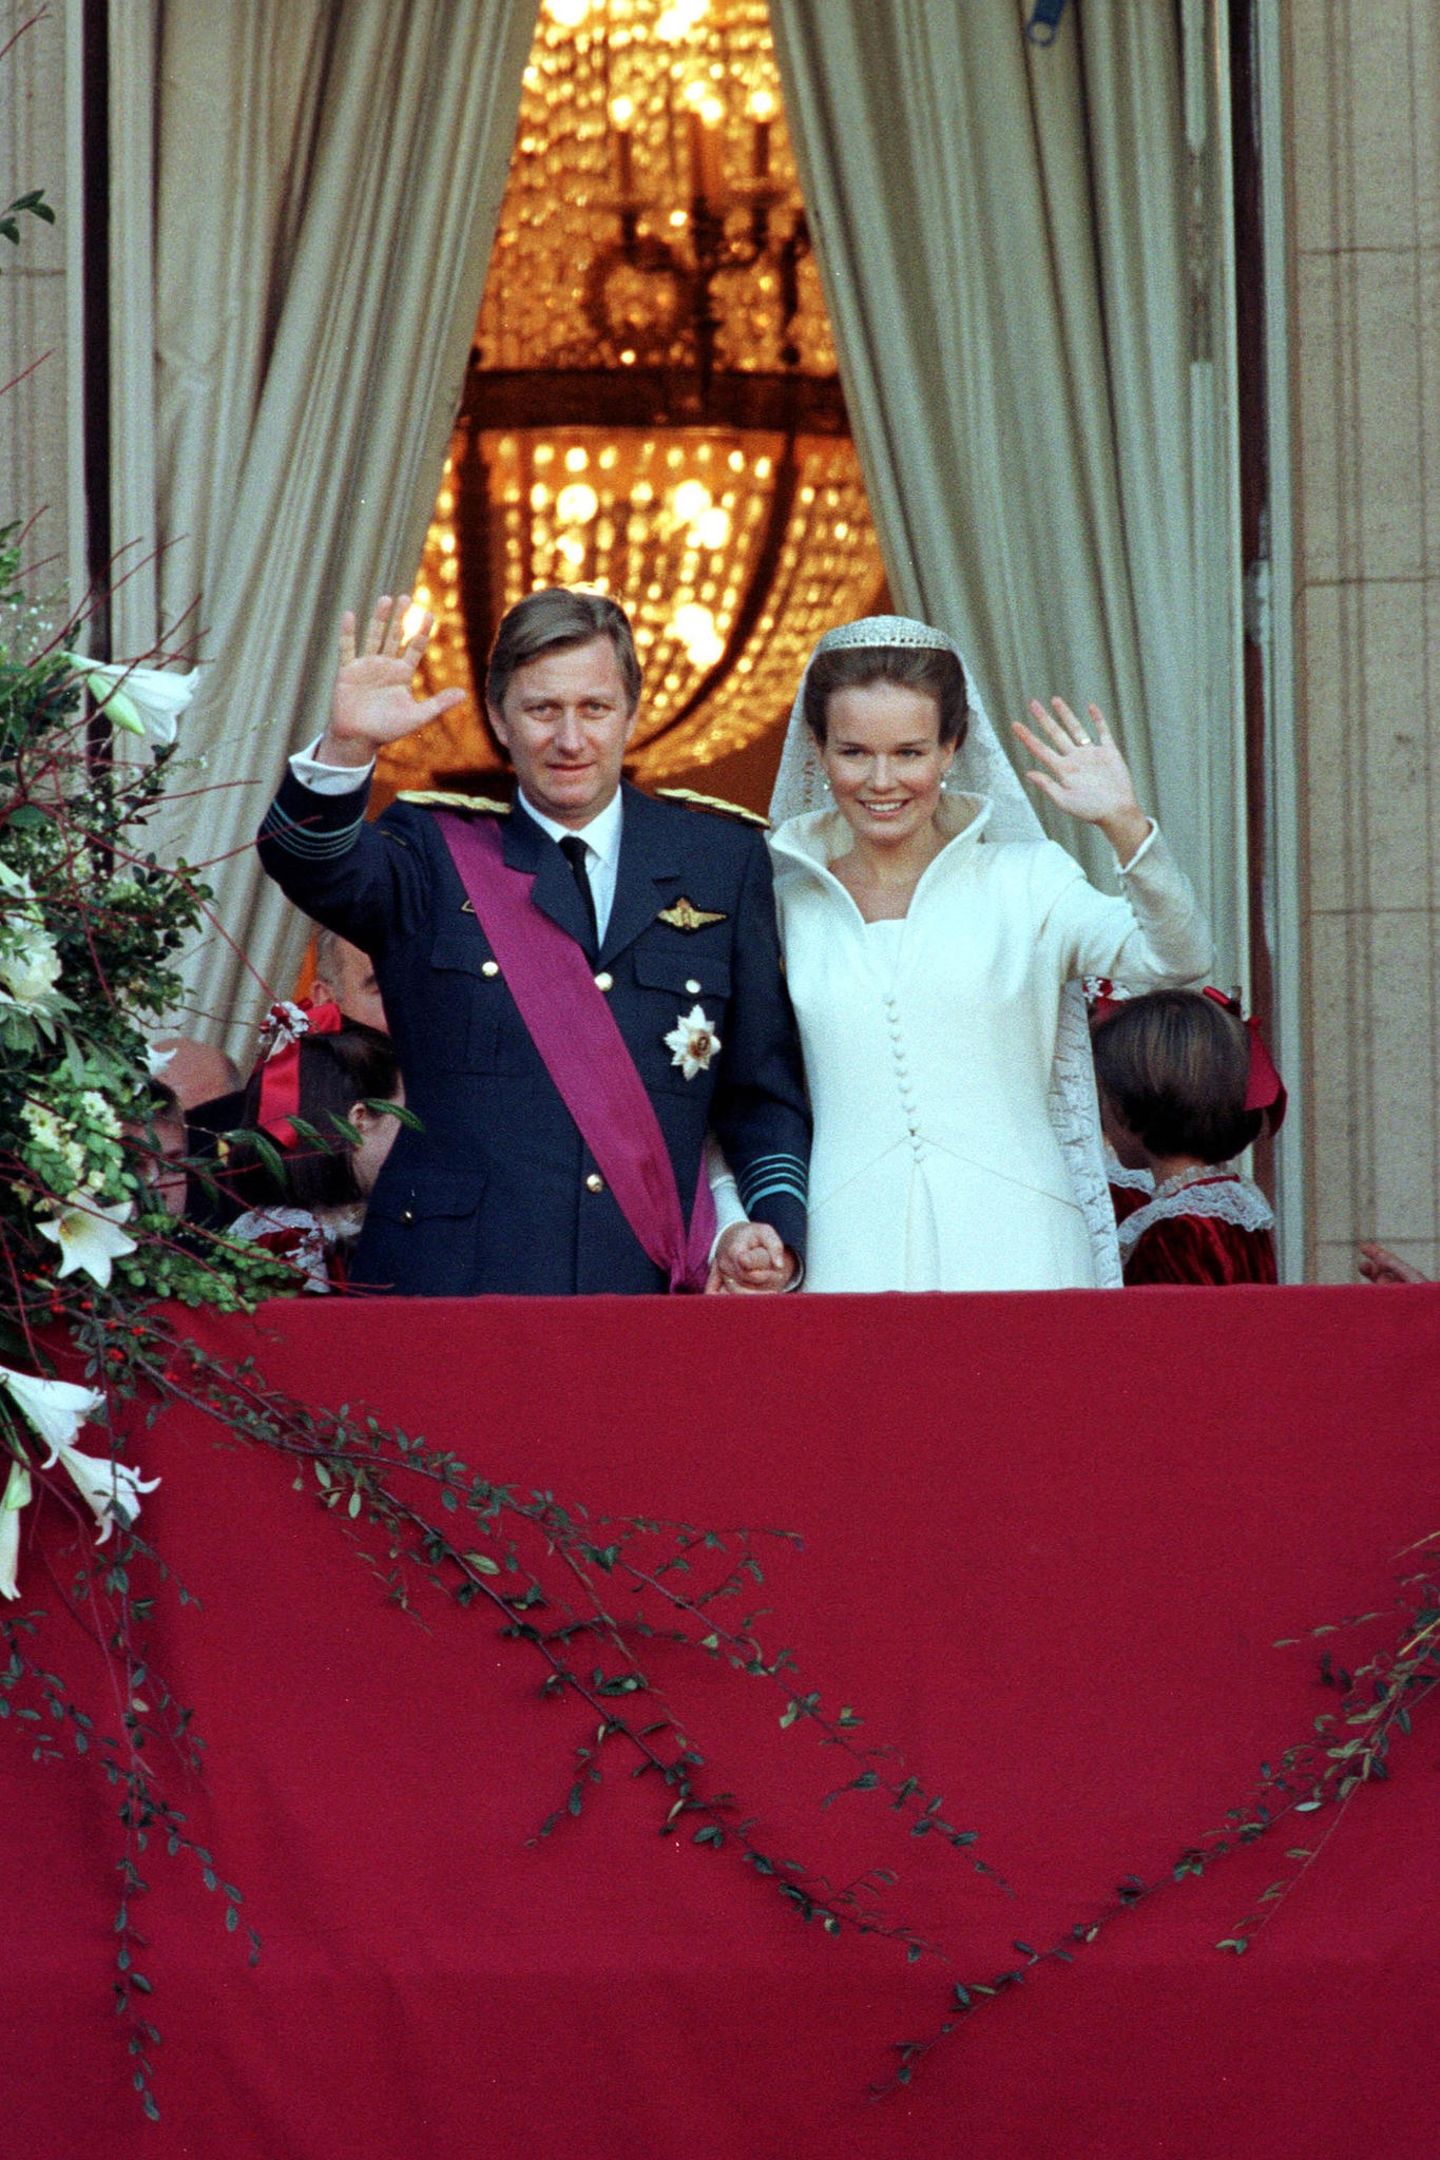 4. Dezember 1999  Vor 21 Jahren wurde aus der schönen Aristokraten-Tochter Mathilde d'Udekem d'Acoz Prinzessin Mathilde. Die Hochzeit mit Kronprinz Philippe, dem späteren König der Belgier, war die letzte royale Hochzeit des 20. Jahrhundert und wurde mit über 1700 Gästen in der Kathedrale St. Michael und Gudula in Brüssel gefeiert.